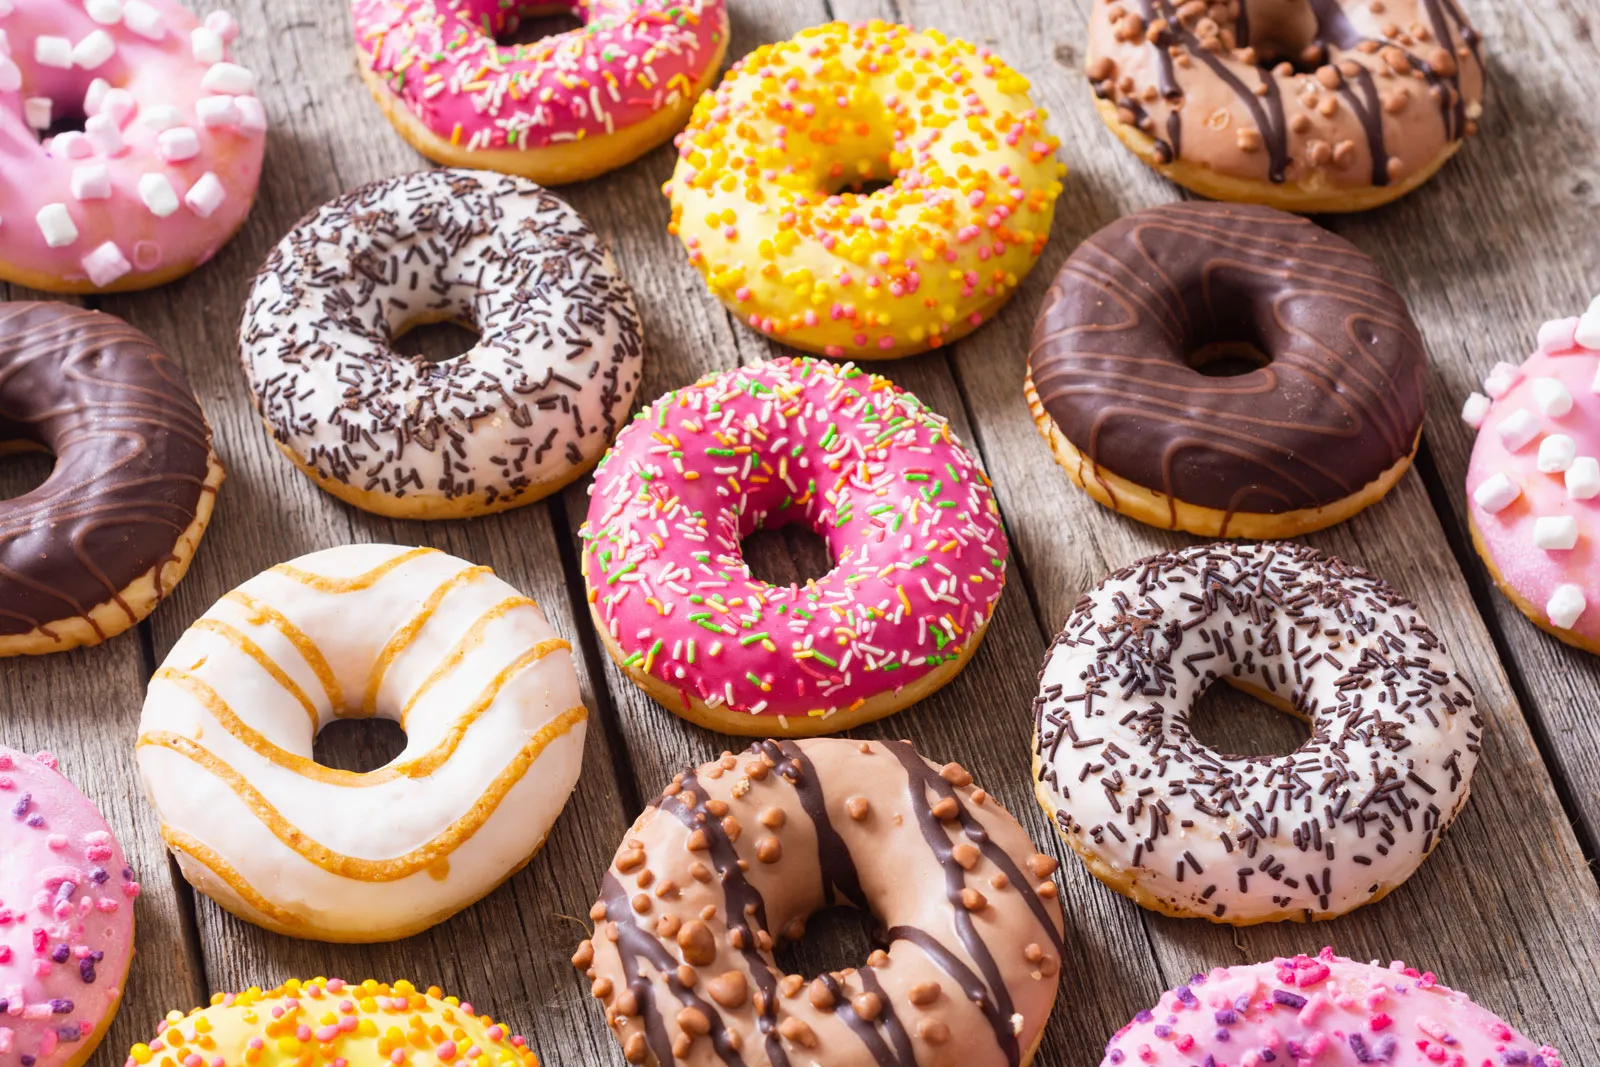 Ο παράδεισος των donuts βρίσκεται στη Λάρνακα και σίγουρα πρέπει να τον επισκεφτείς